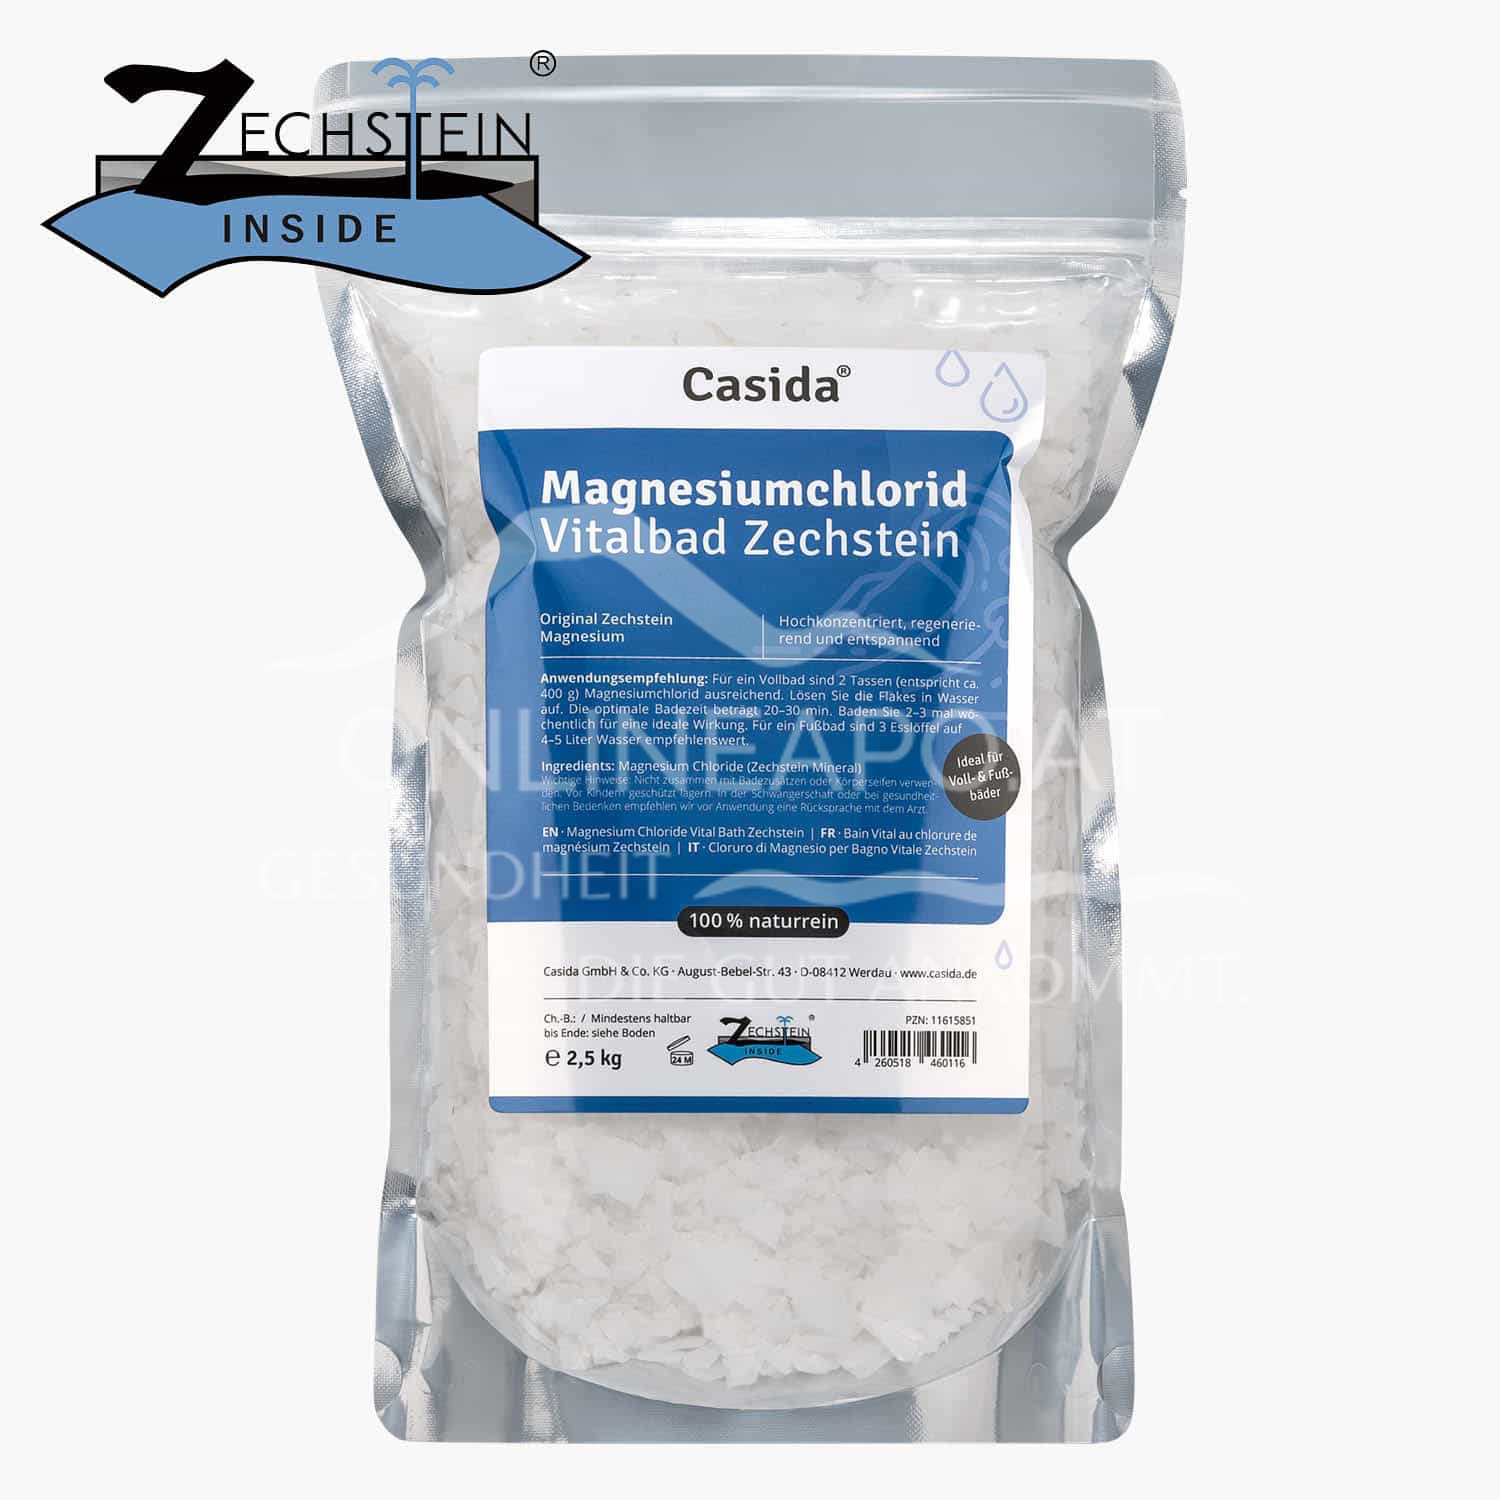 Casida Magnesiumchlorid Vitalbad Zechstein